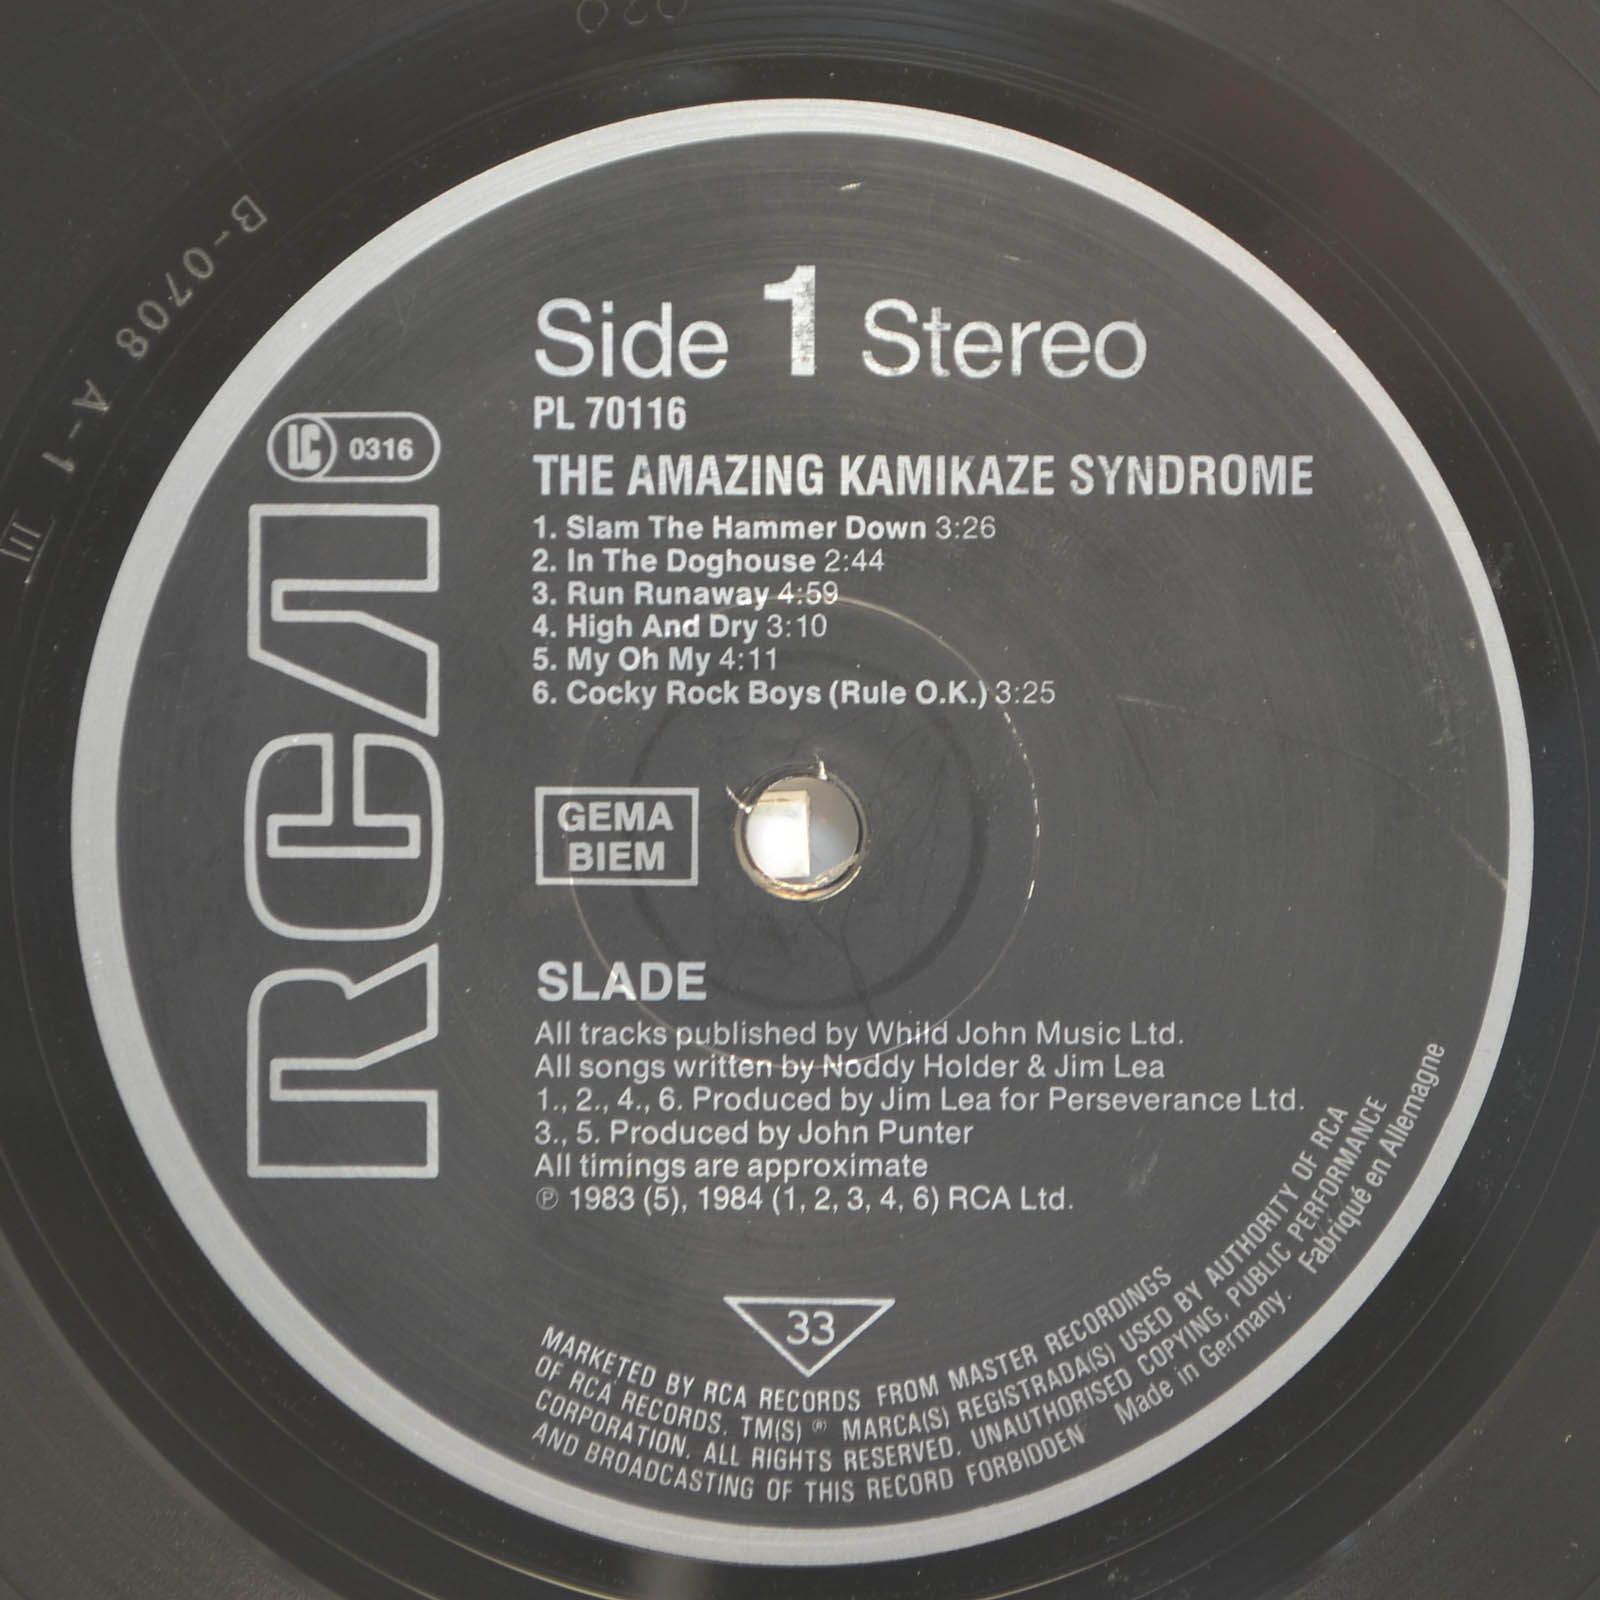 Slade — The Amazing Kamikaze Syndrome, 1984